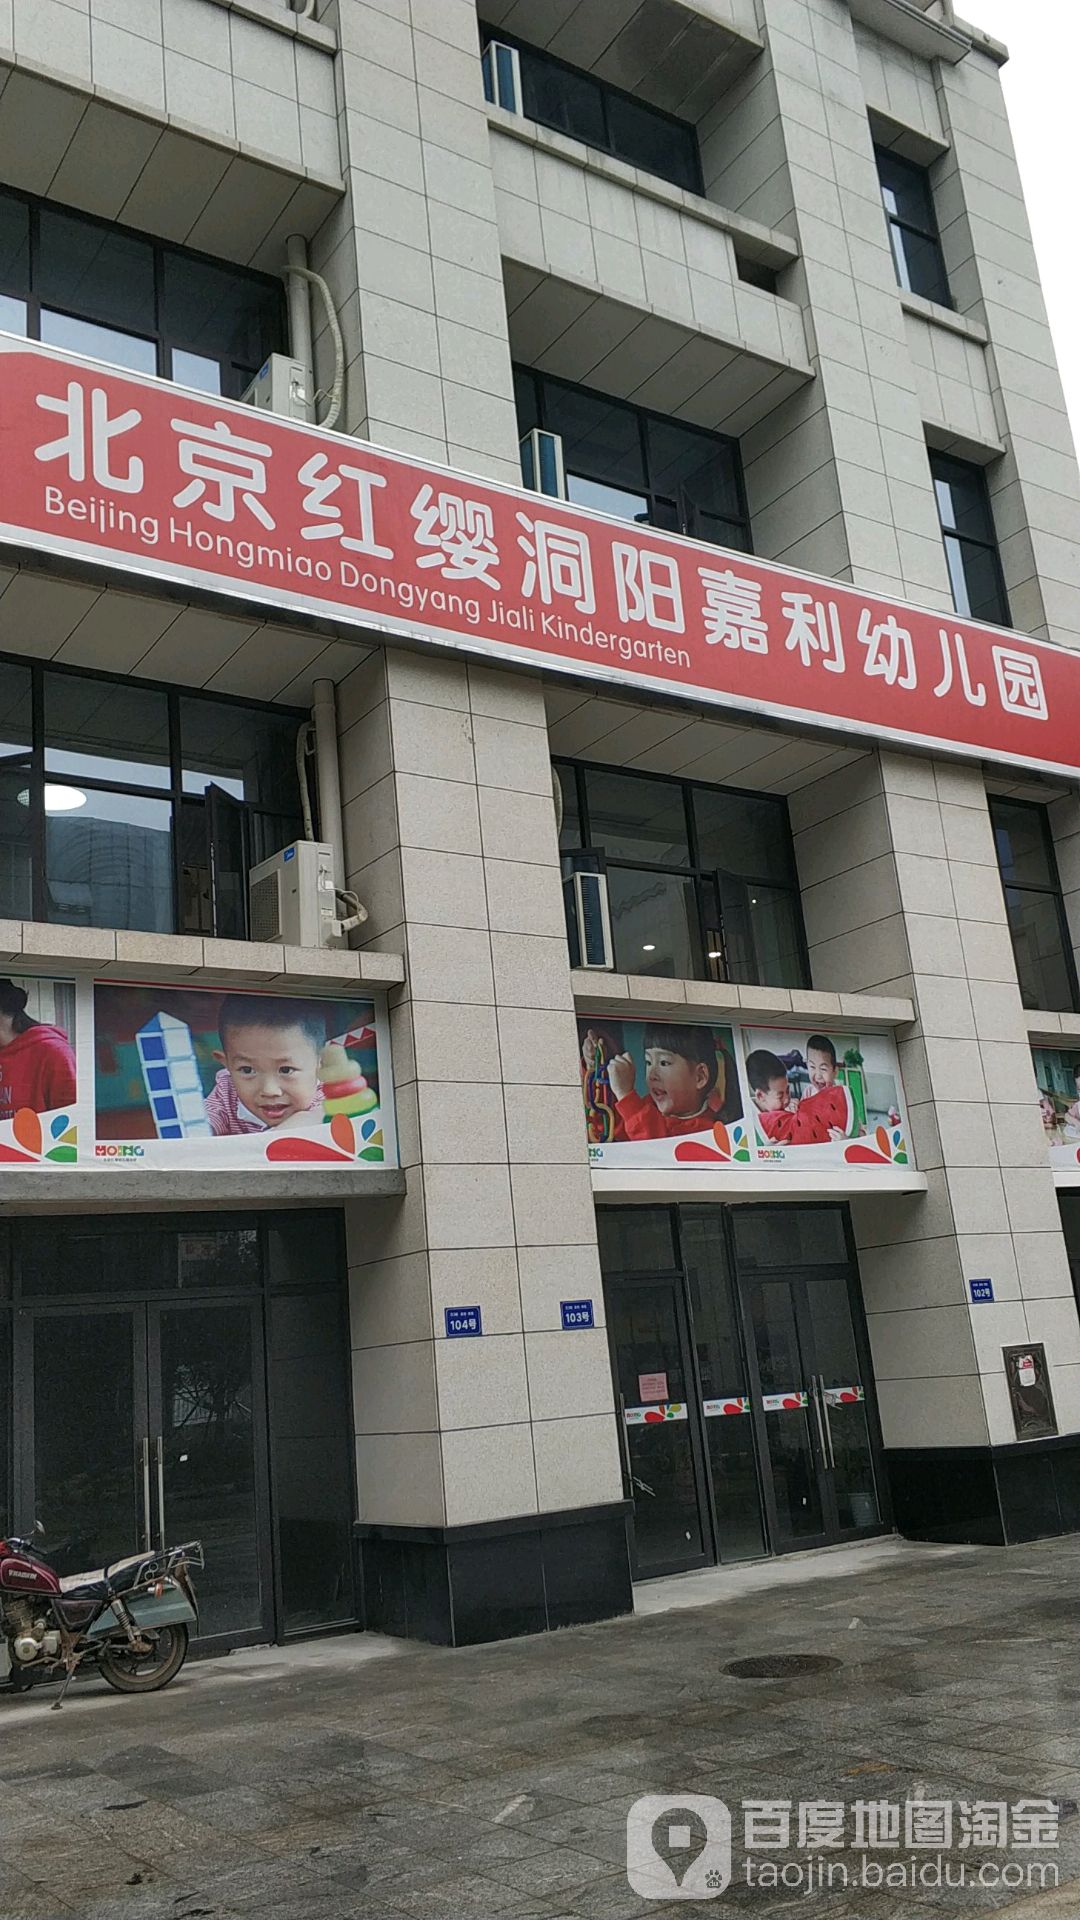 北京红缨洞阳嘉利幼儿园的图片